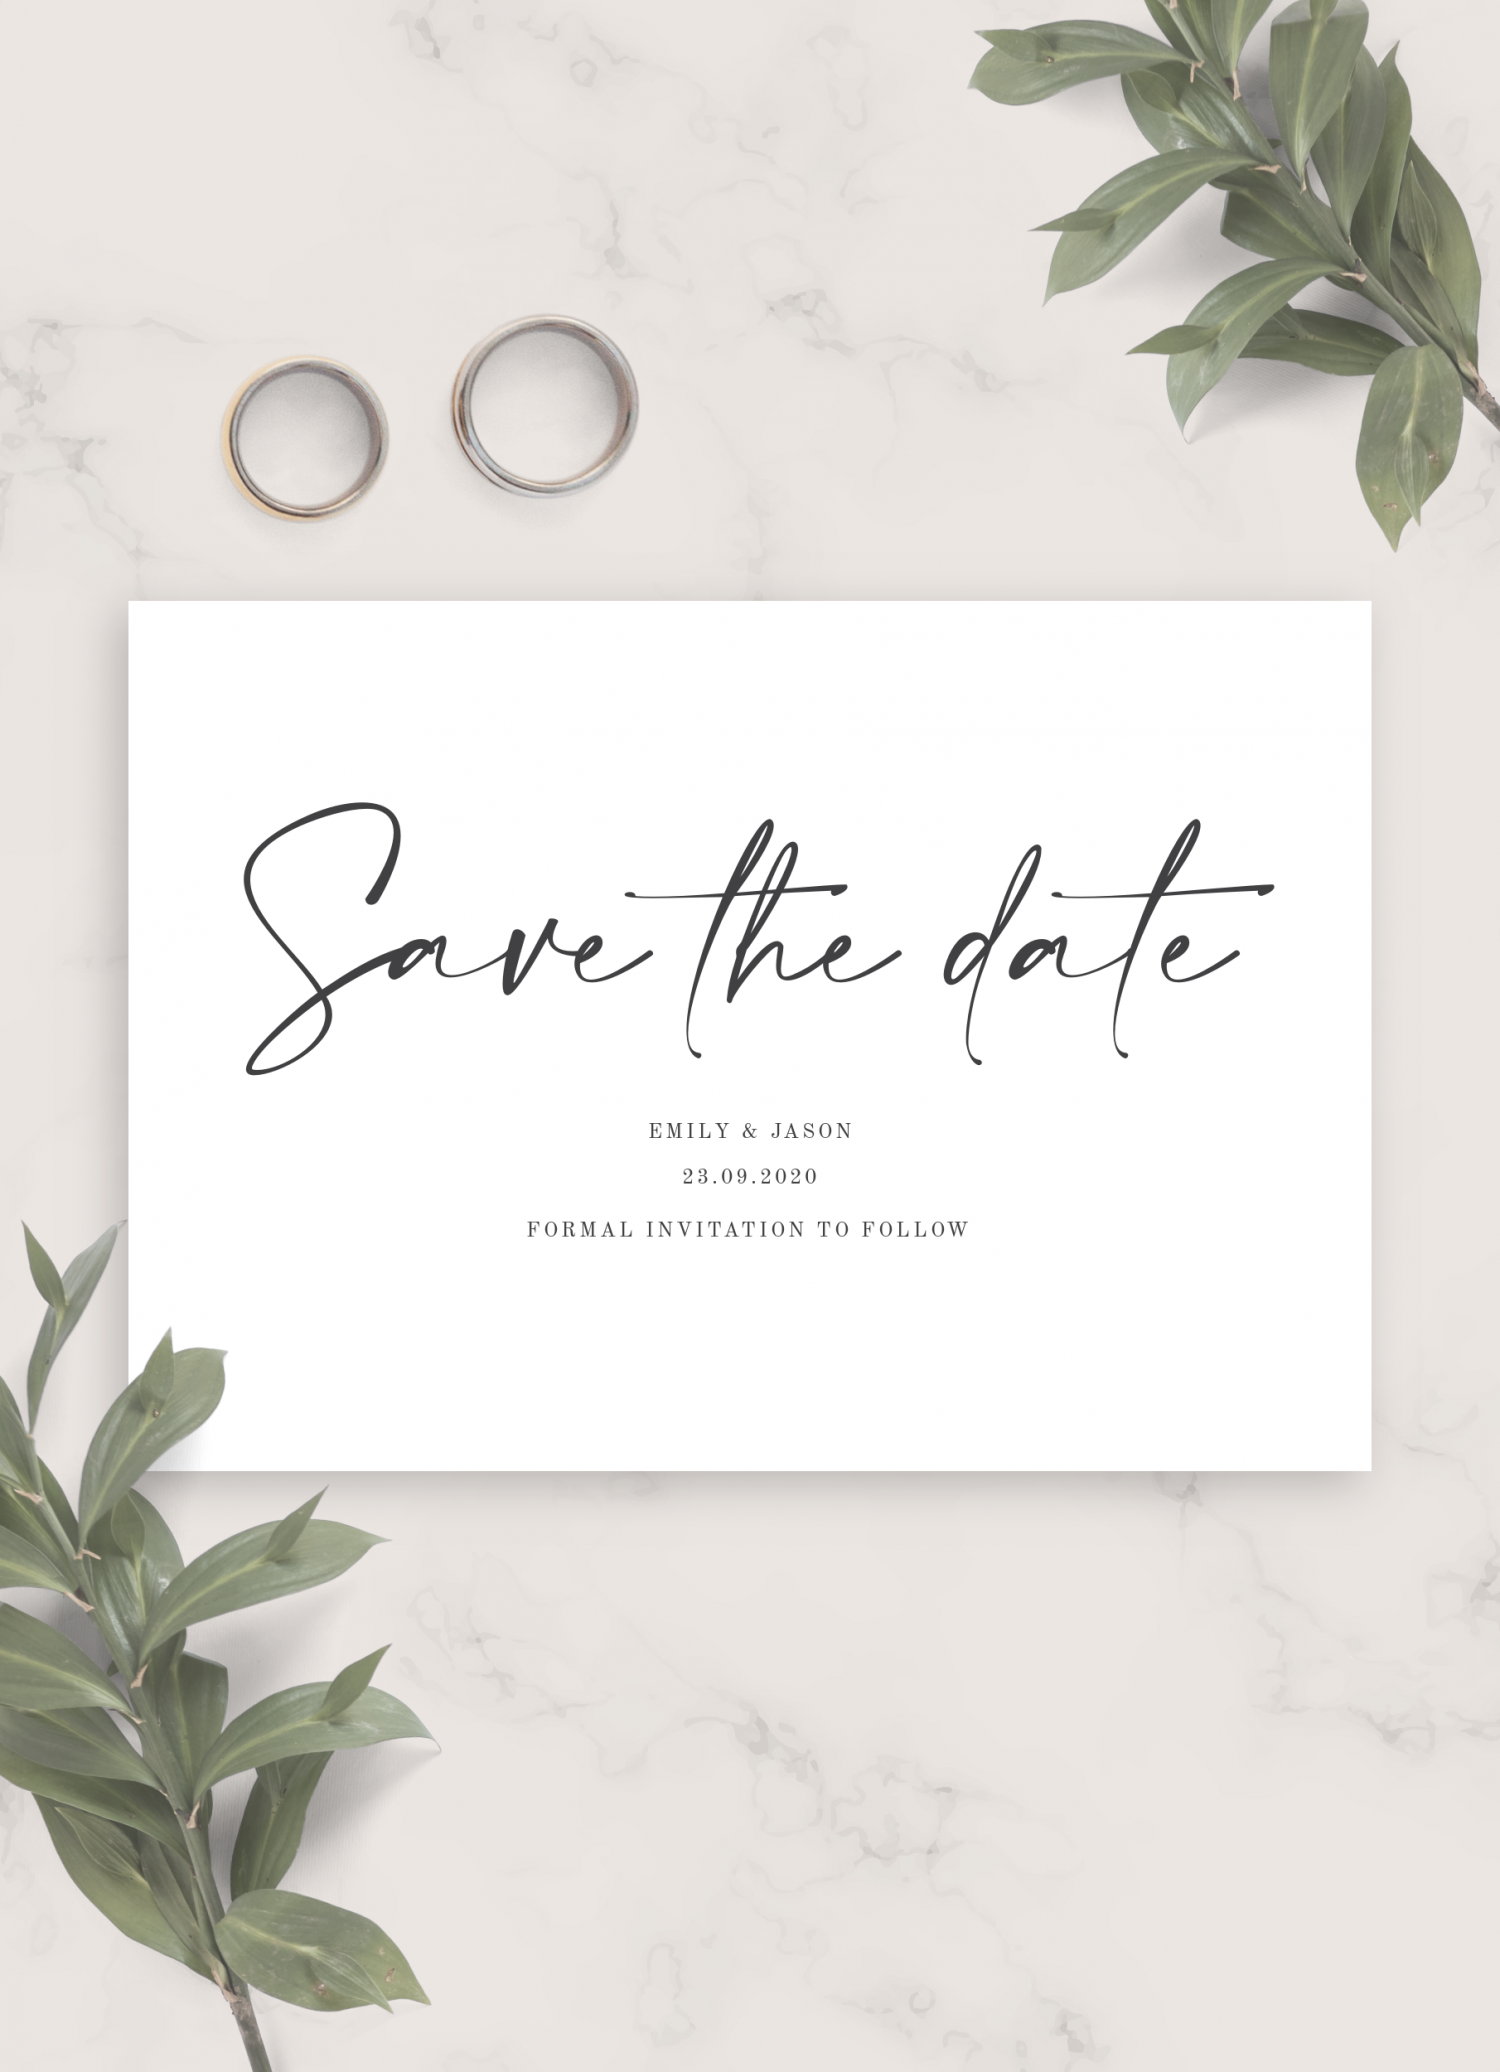 Printable Invite Minimal #5 Simple Instant Download Modern Wedding Invite Minimalist Photo Wedding Invitation Set Editable Template